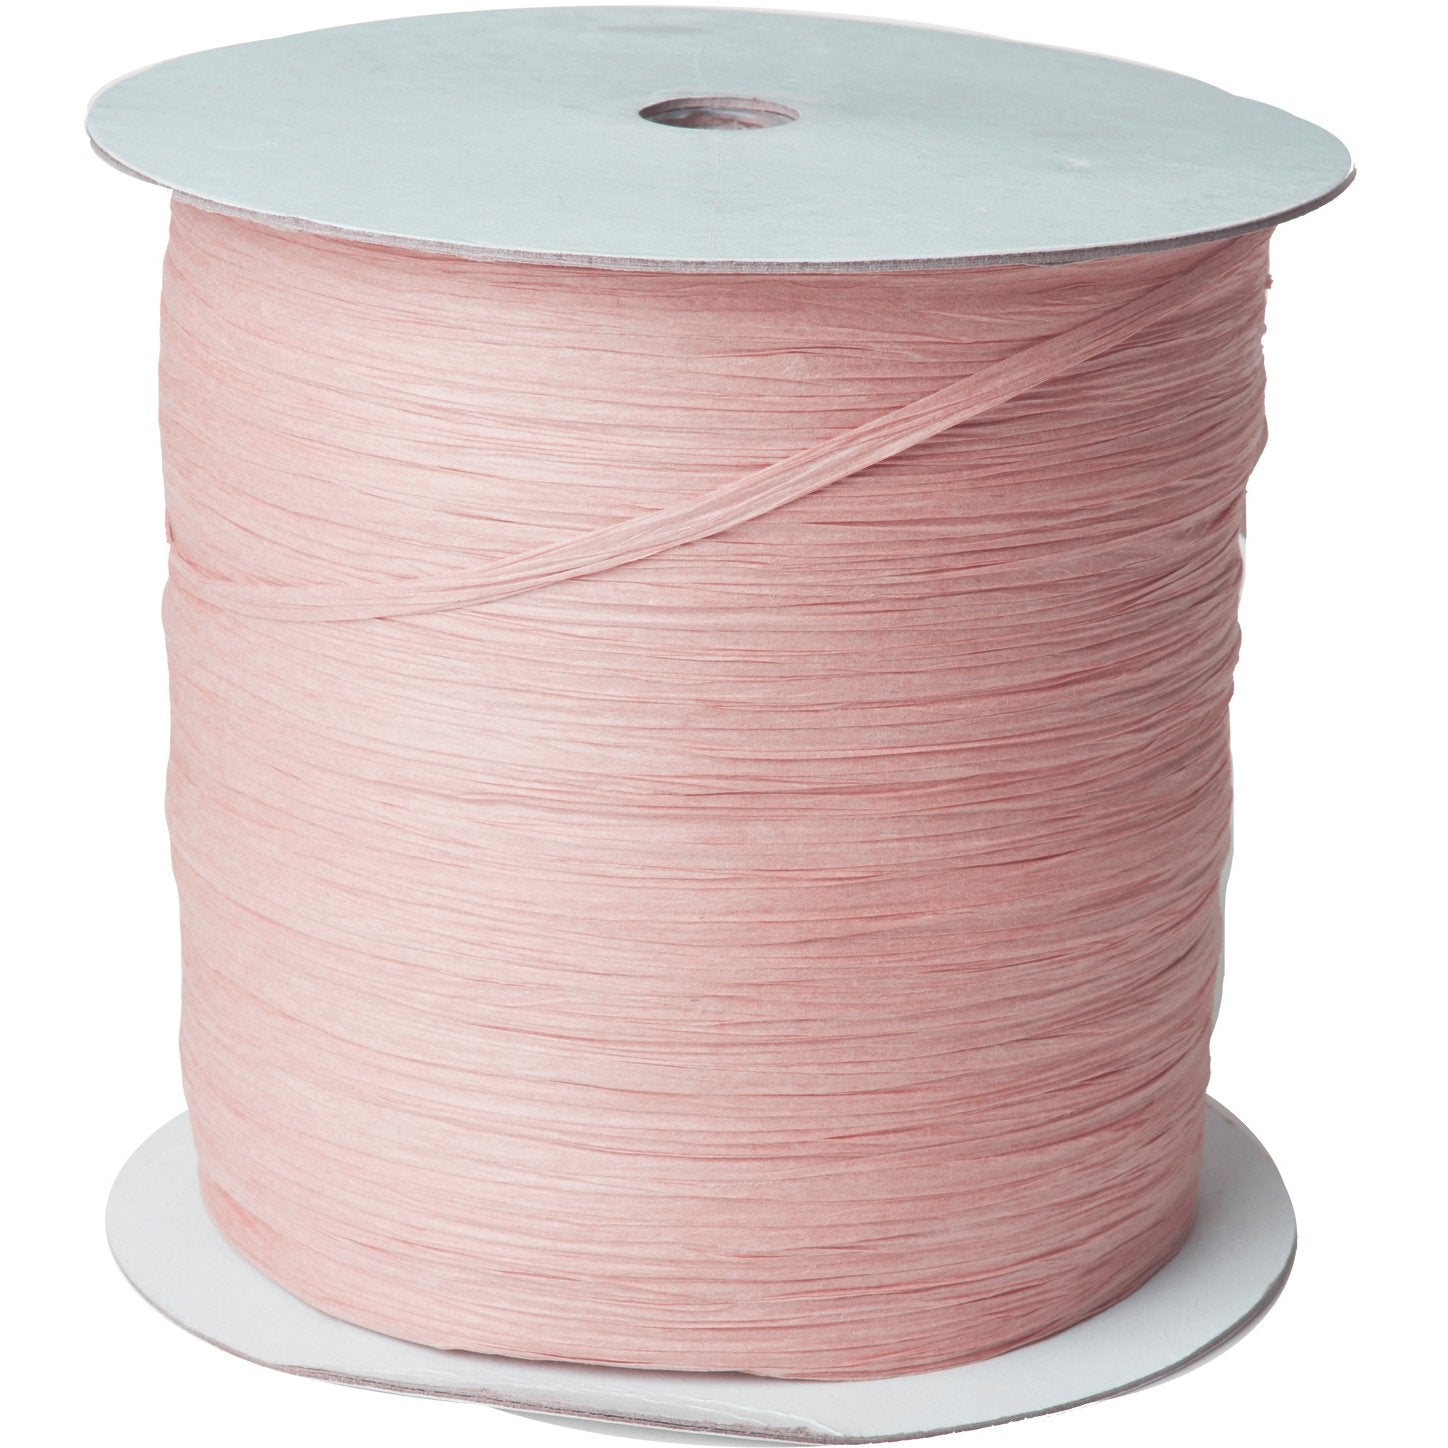 Jillson & Roberts Paper Raffia Ribbon, 1/4" Wide x 1000 Yards, Pastel Pink